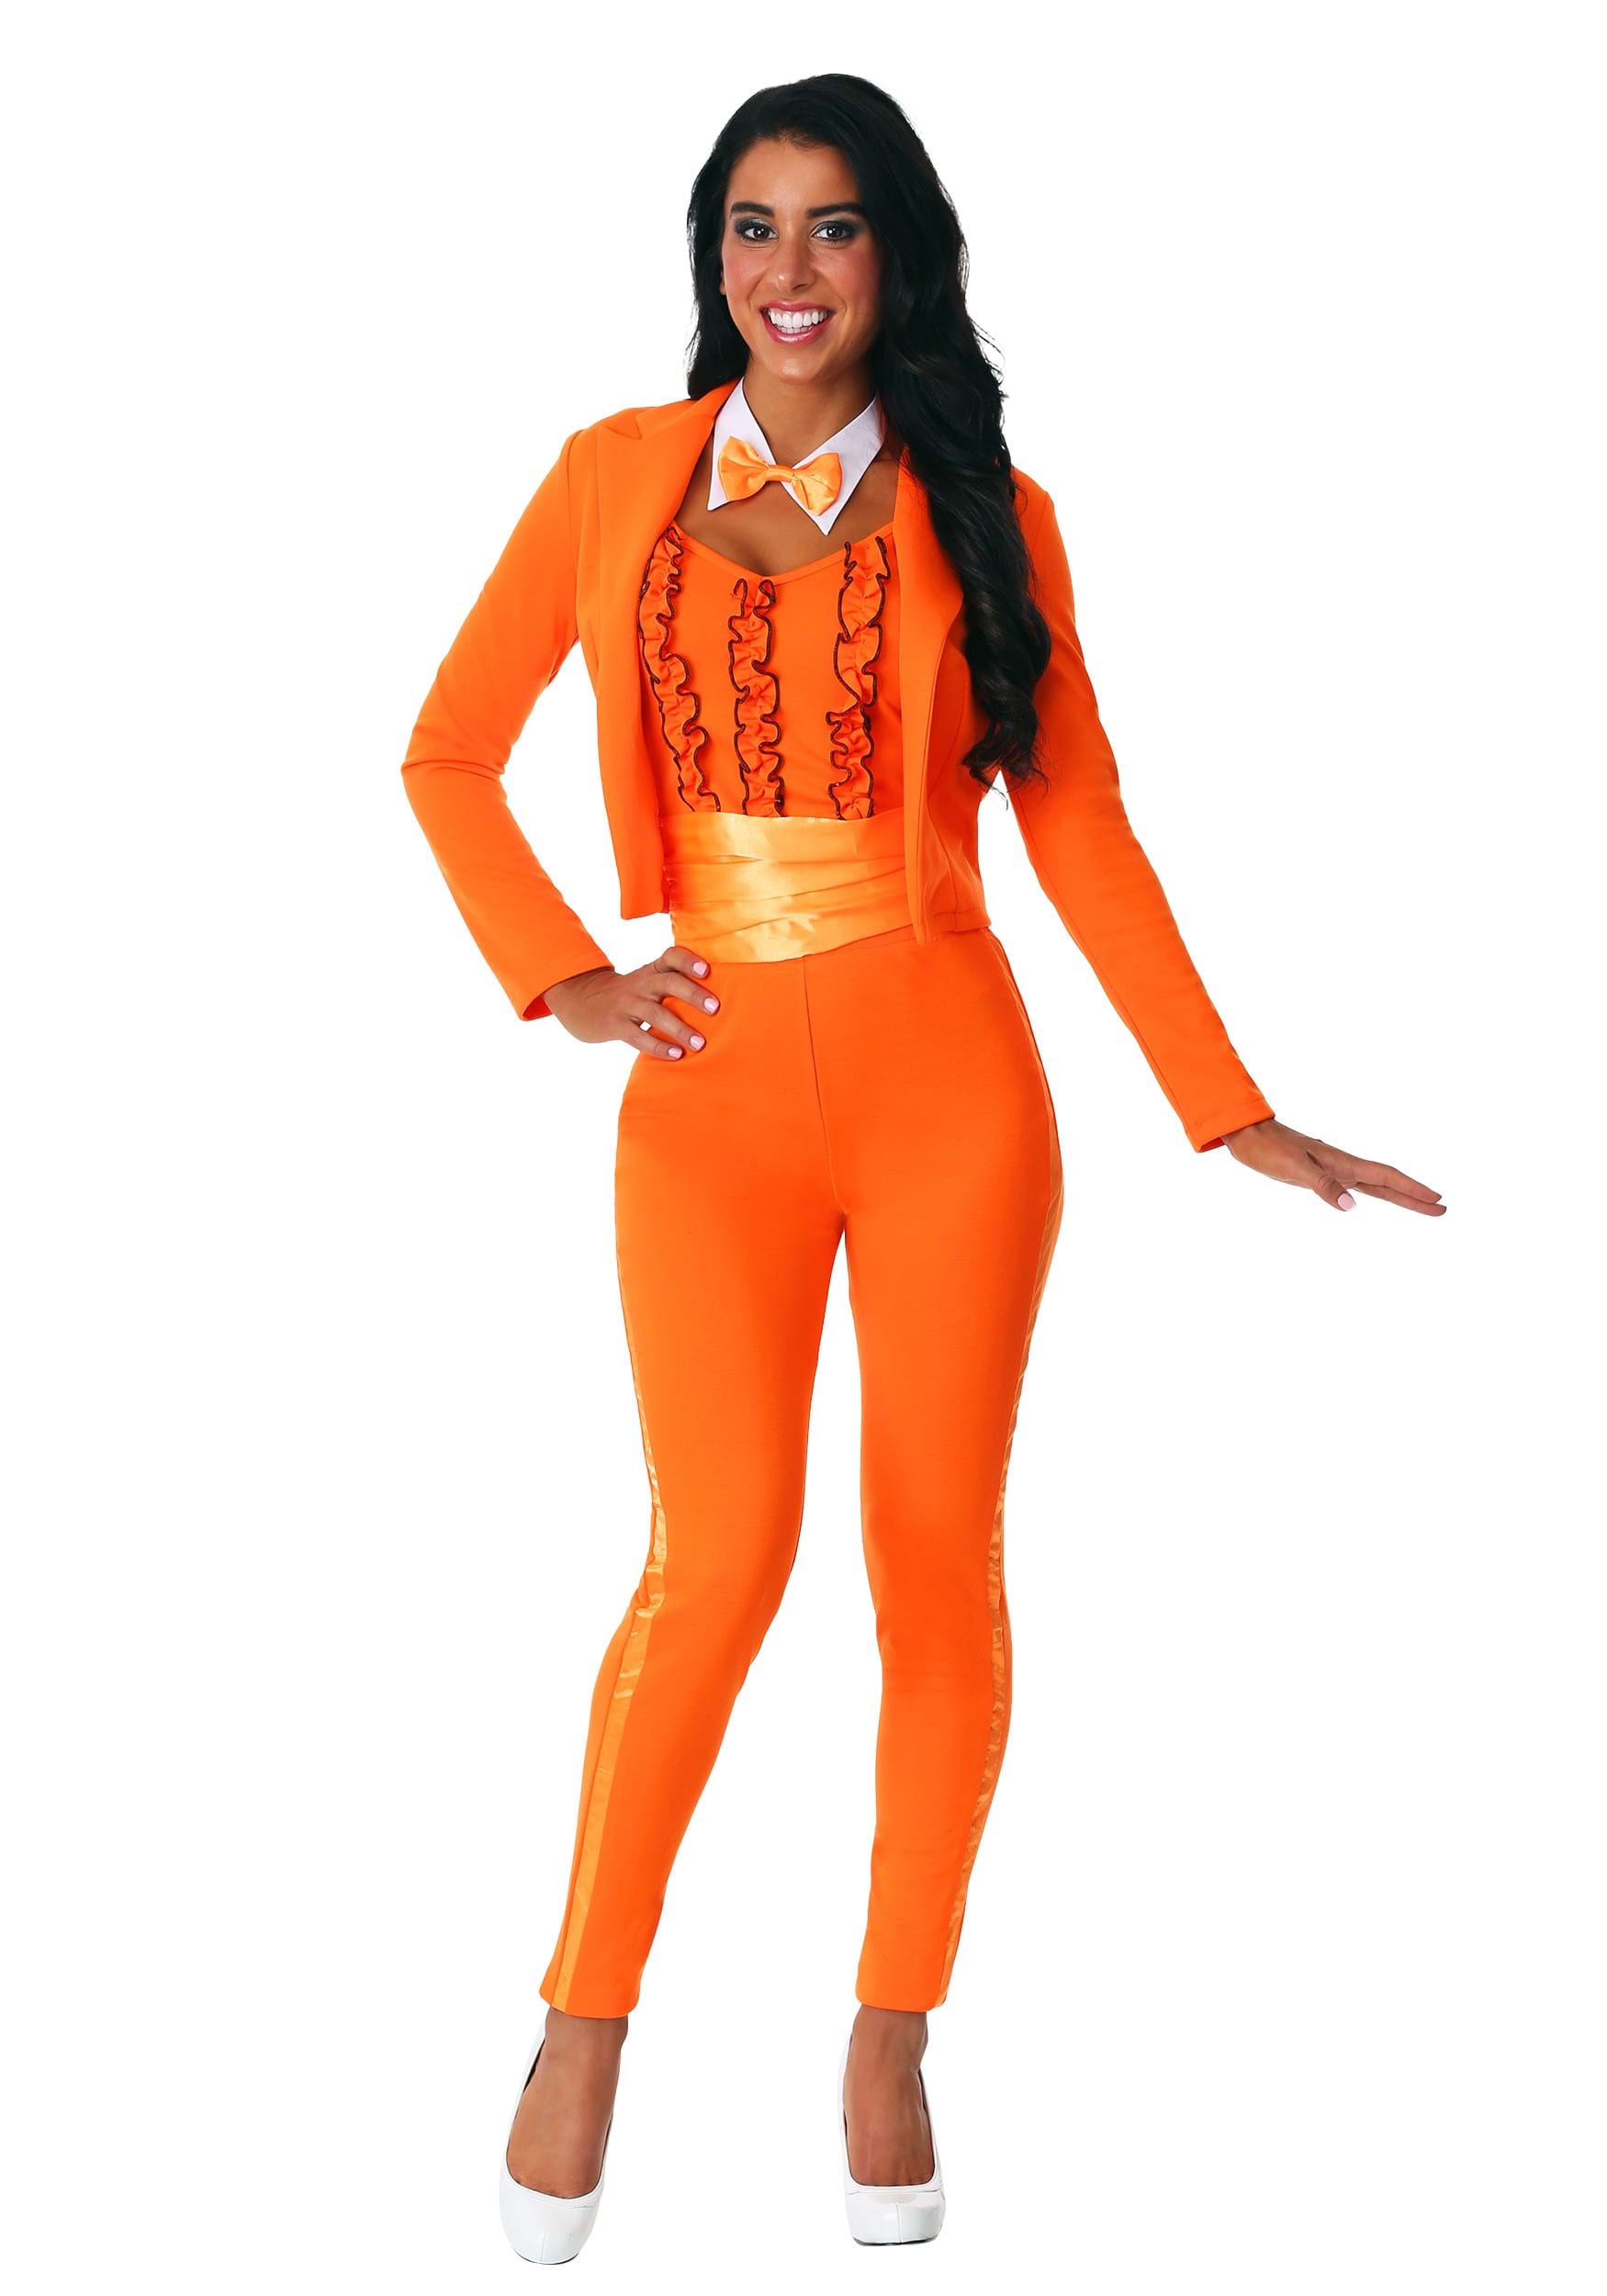 Photos - Fancy Dress FUN Costumes Women's Orange Tuxedo Costume Orange FUN6949AD